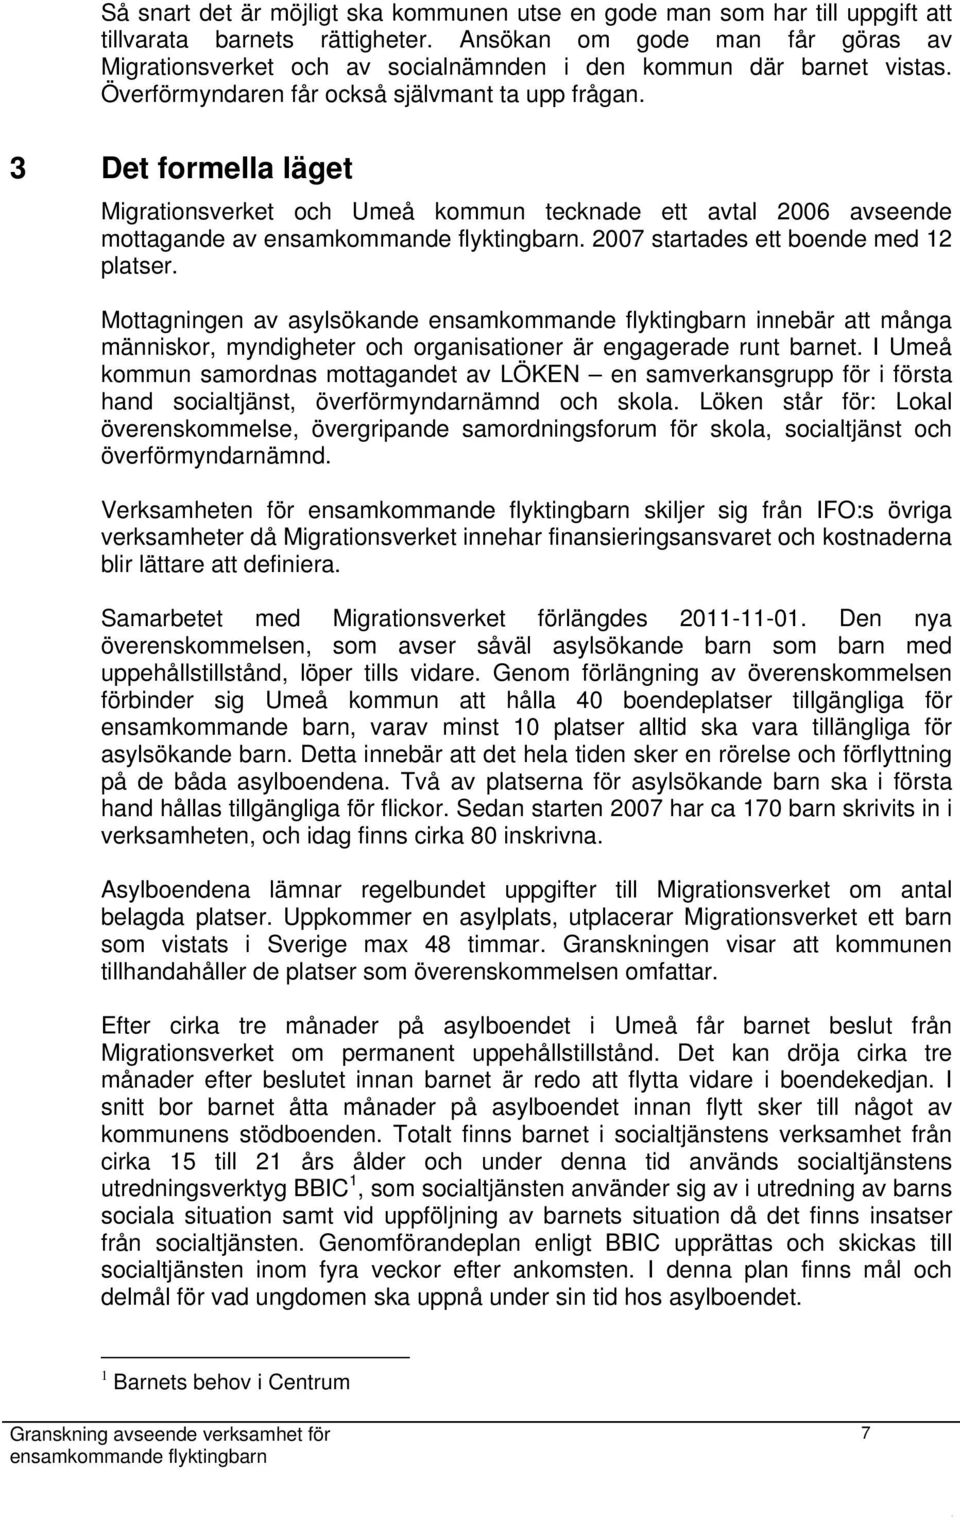 3 Det formella läget Migrationsverket och Umeå kommun tecknade ett avtal 2006 avseende mottagande av. 2007 startades ett boende med 12 platser.